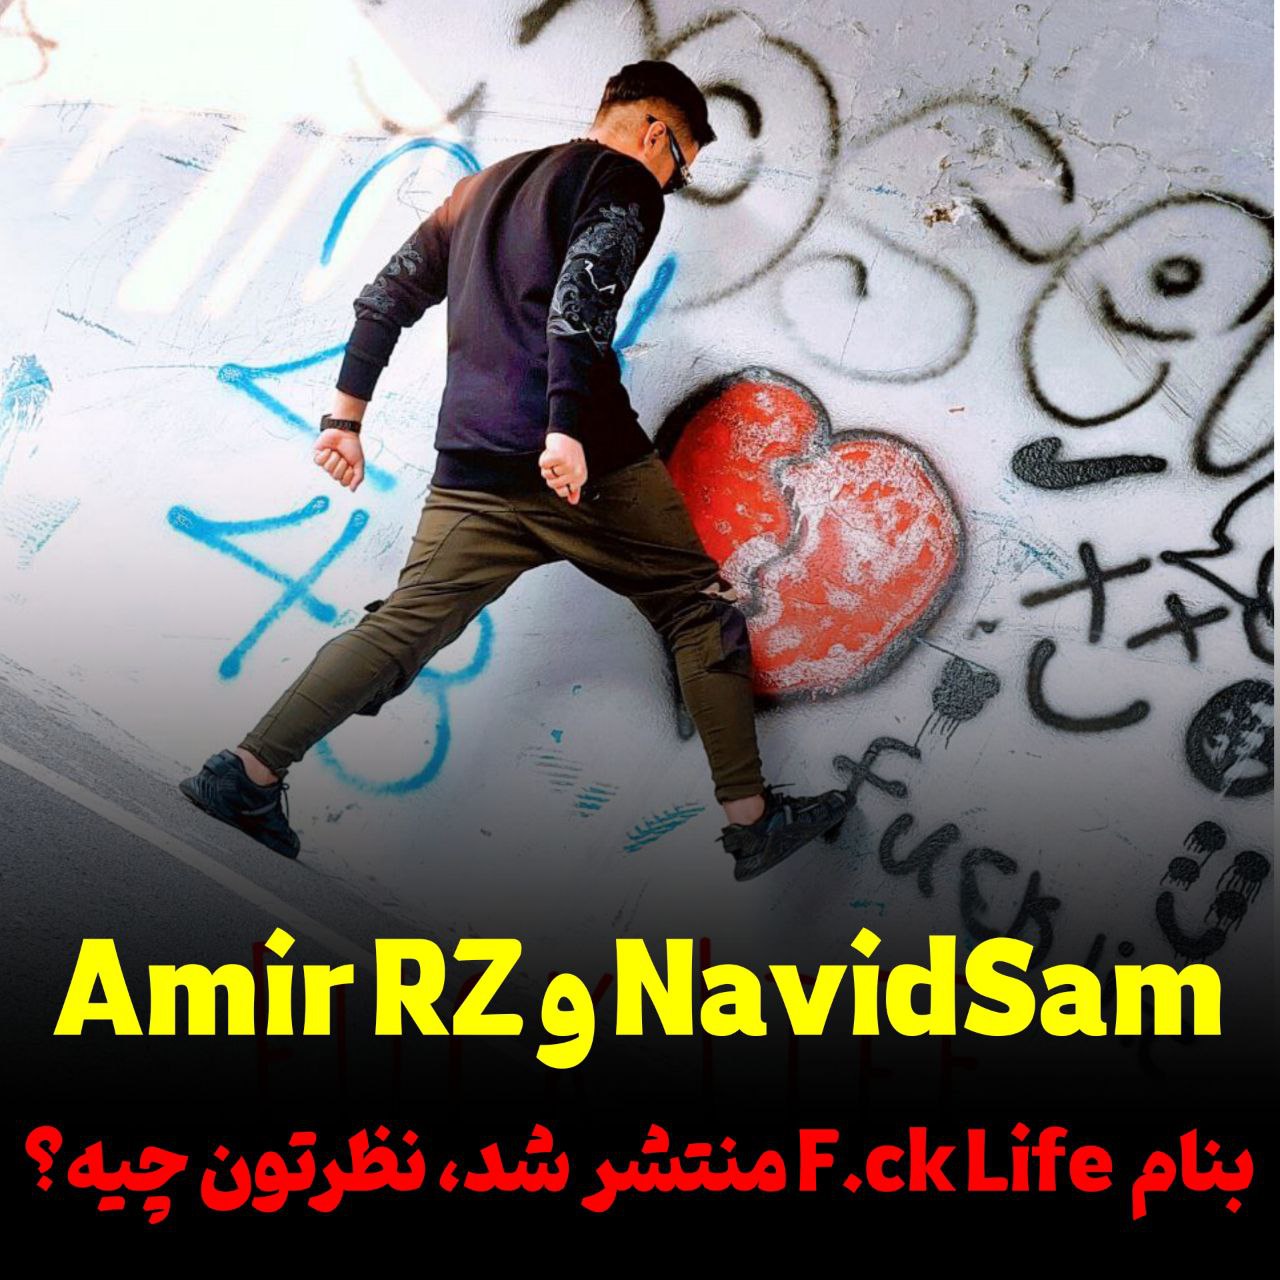 موزیک جدید Amir RZ و NavidSam بنام‌ F.c.k Life منتشر شد